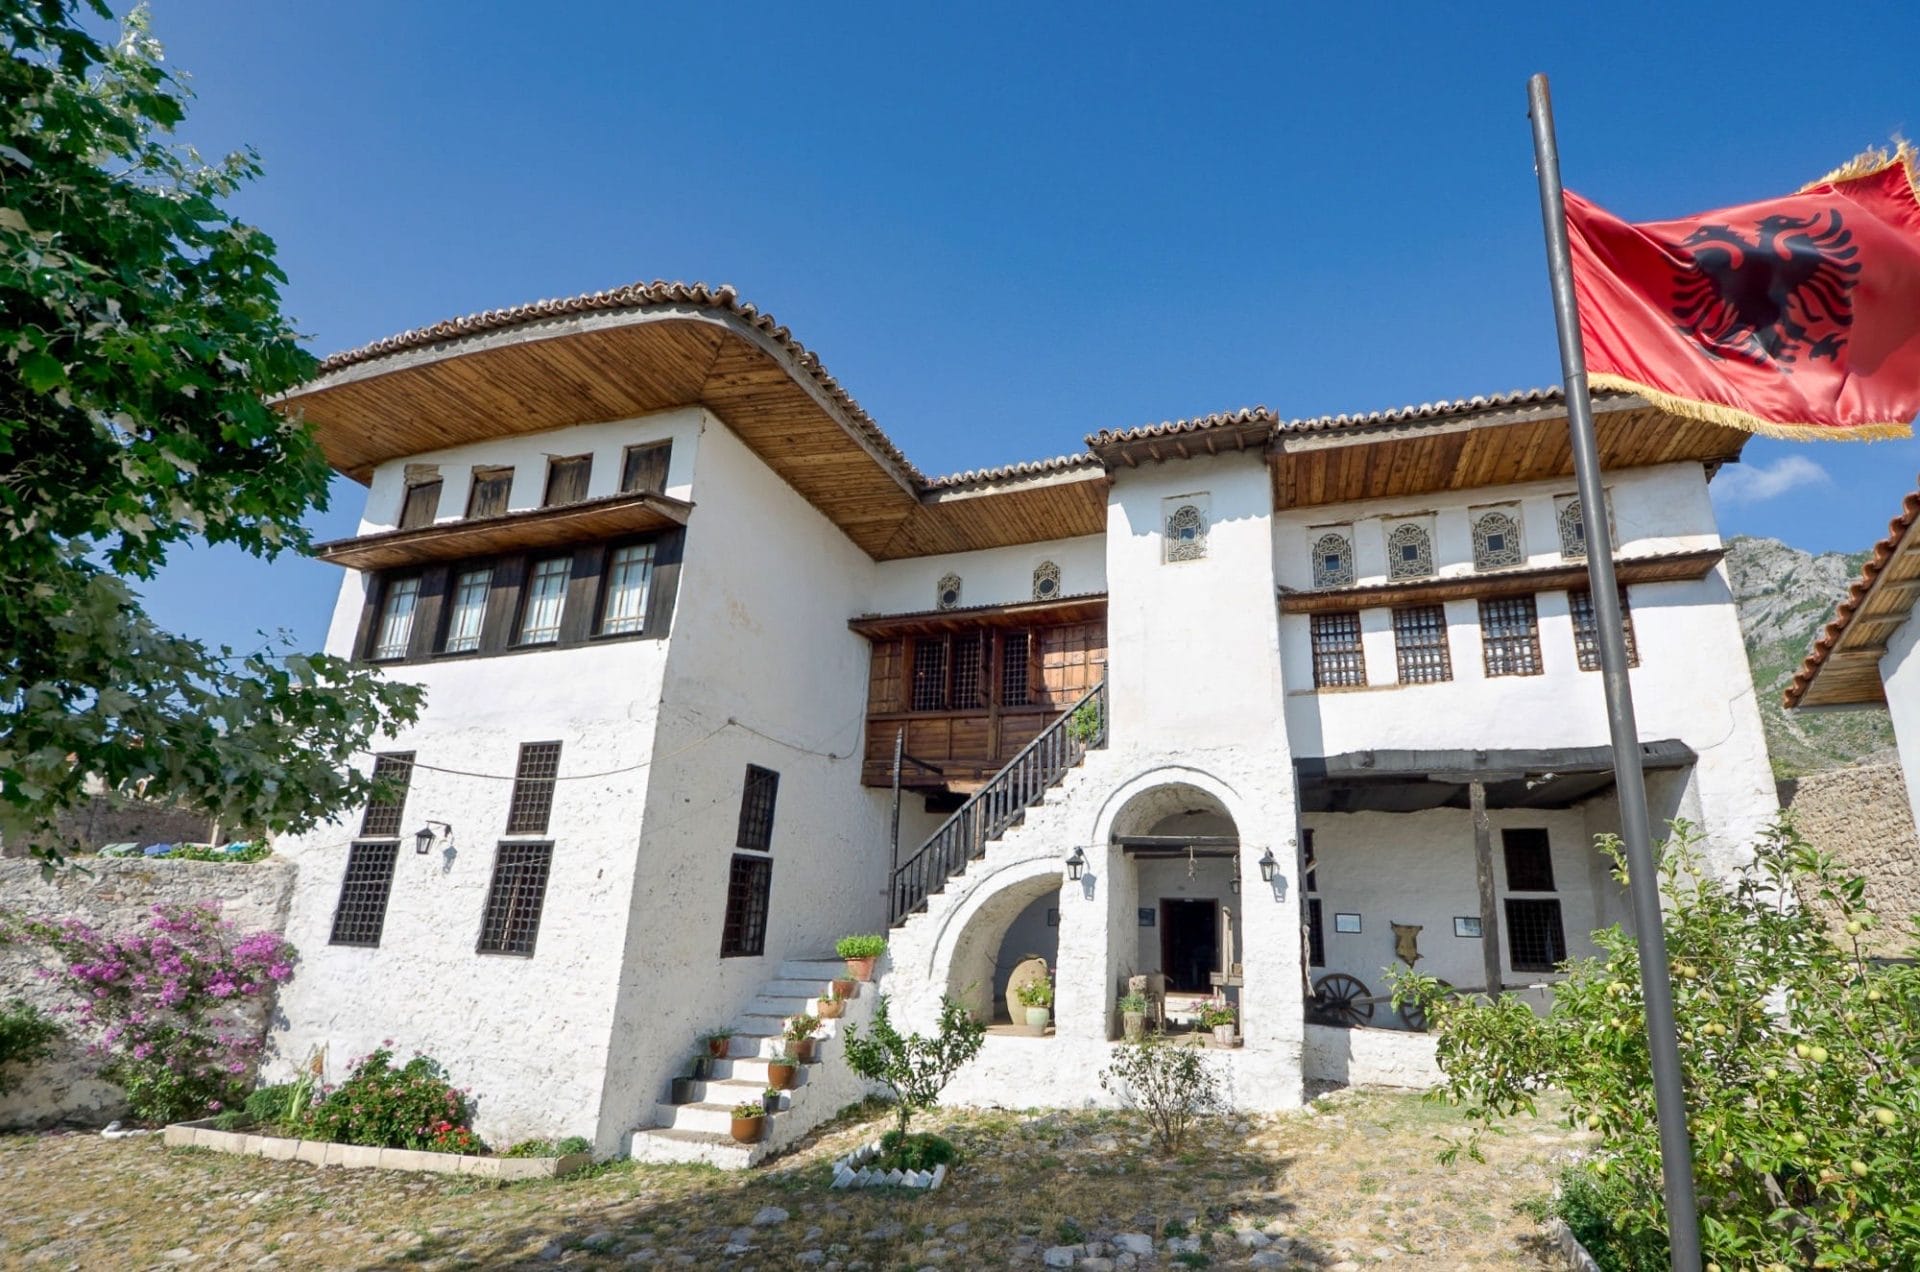 Ethnographic Museum Krujë